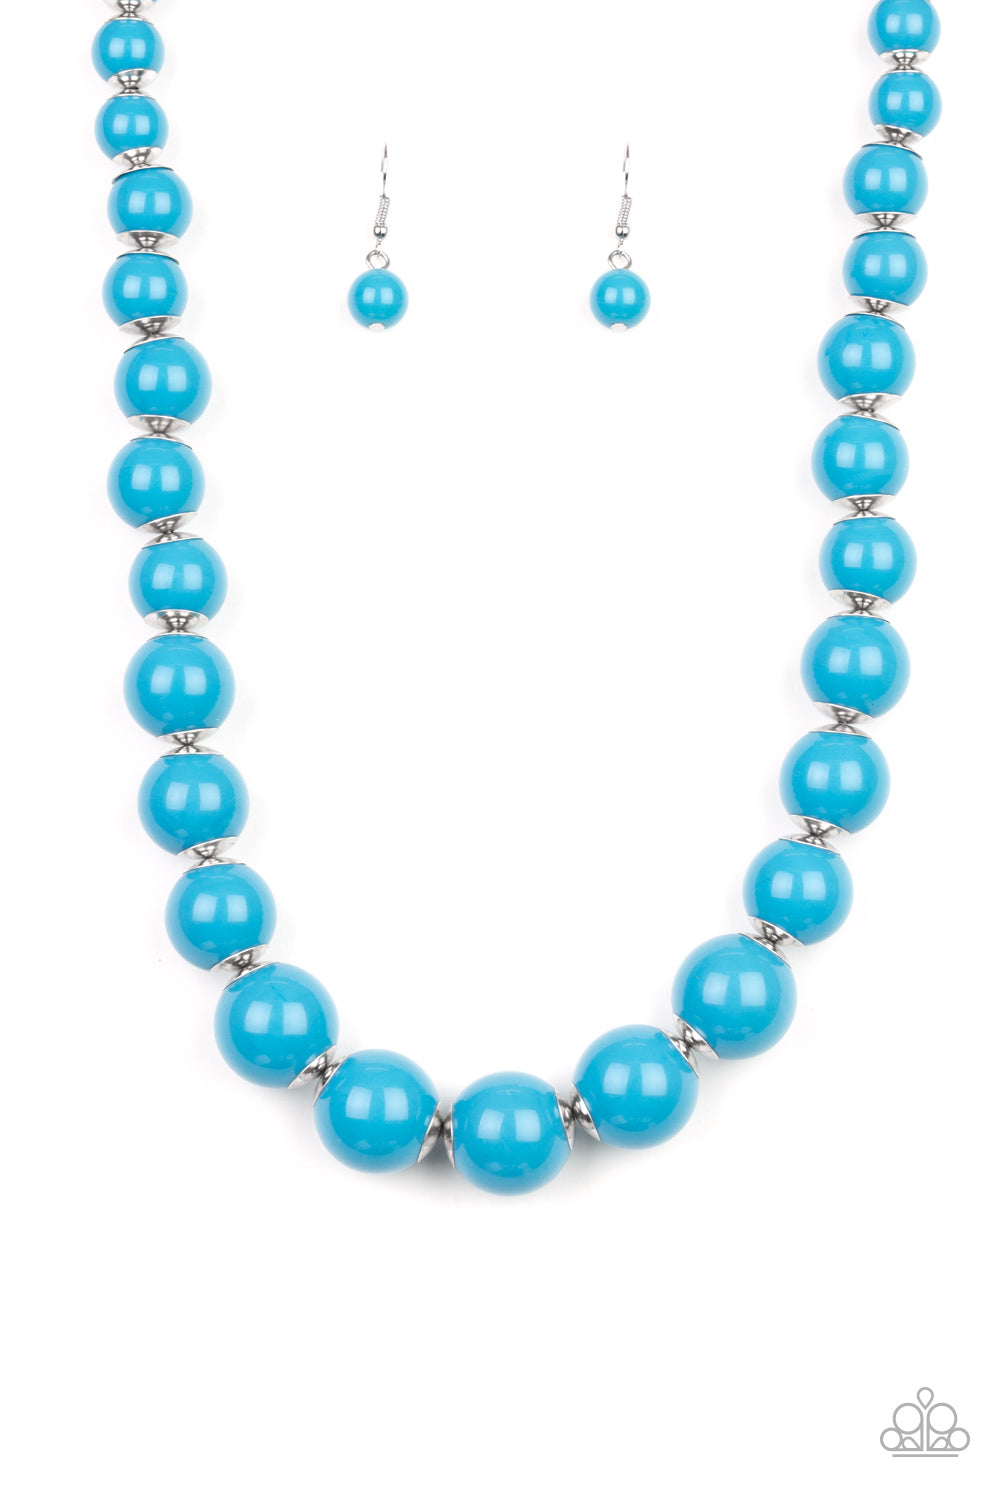 Everyday Eye Candy - Blue necklace w/ matching bracelet